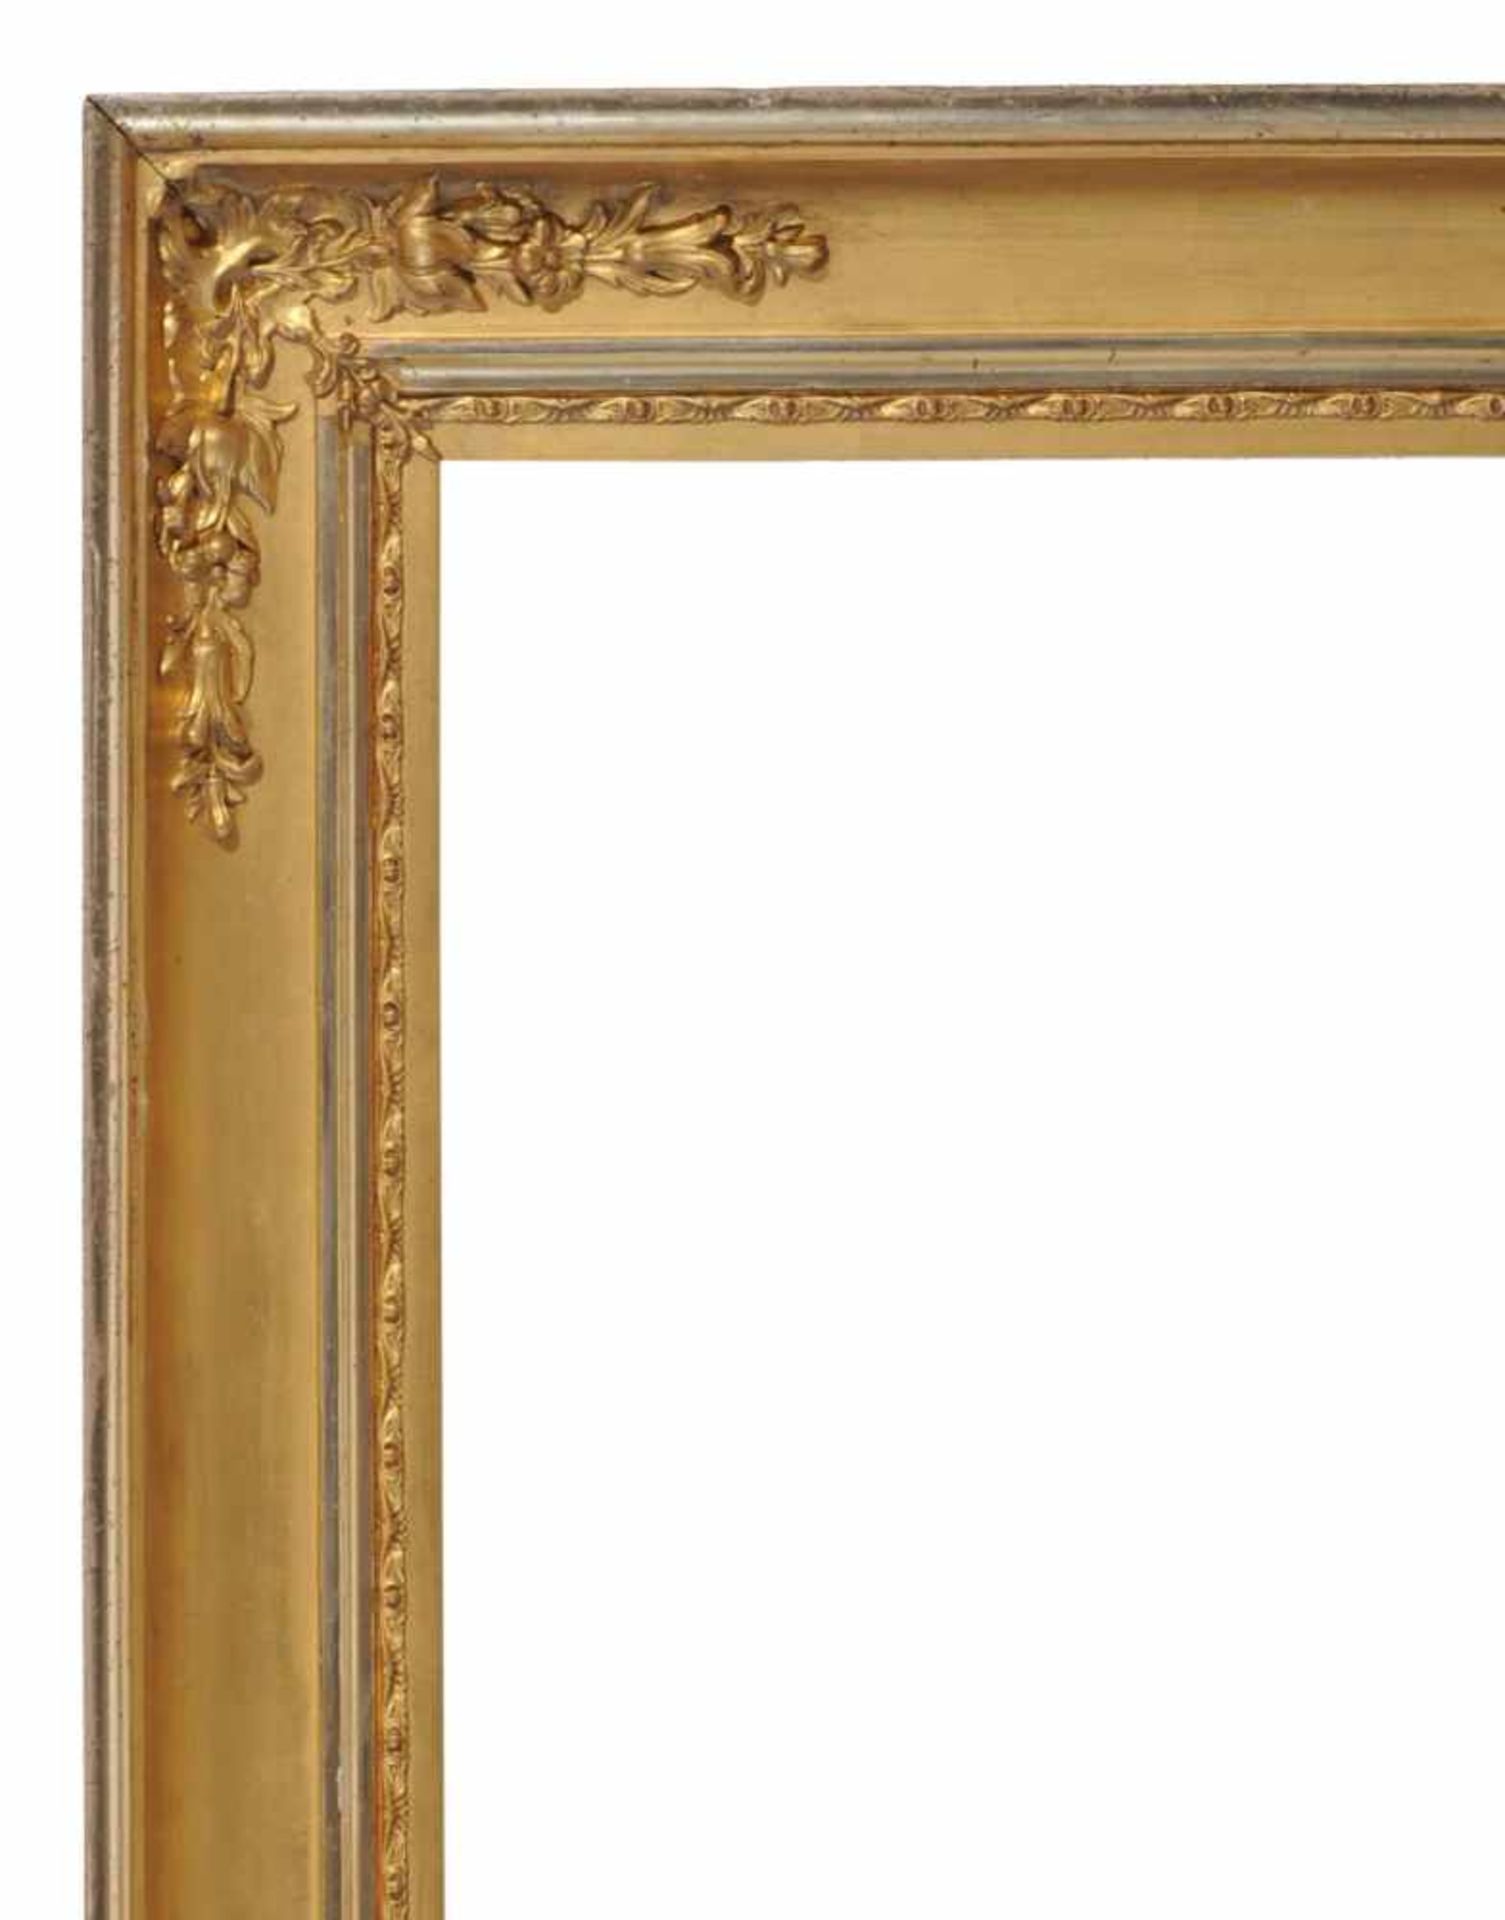 Breiter profilierter Rahmen. Wohl 2. H. 19. Jh. Holz, masseverziert, vergoldet und versilbert. - Bild 2 aus 3